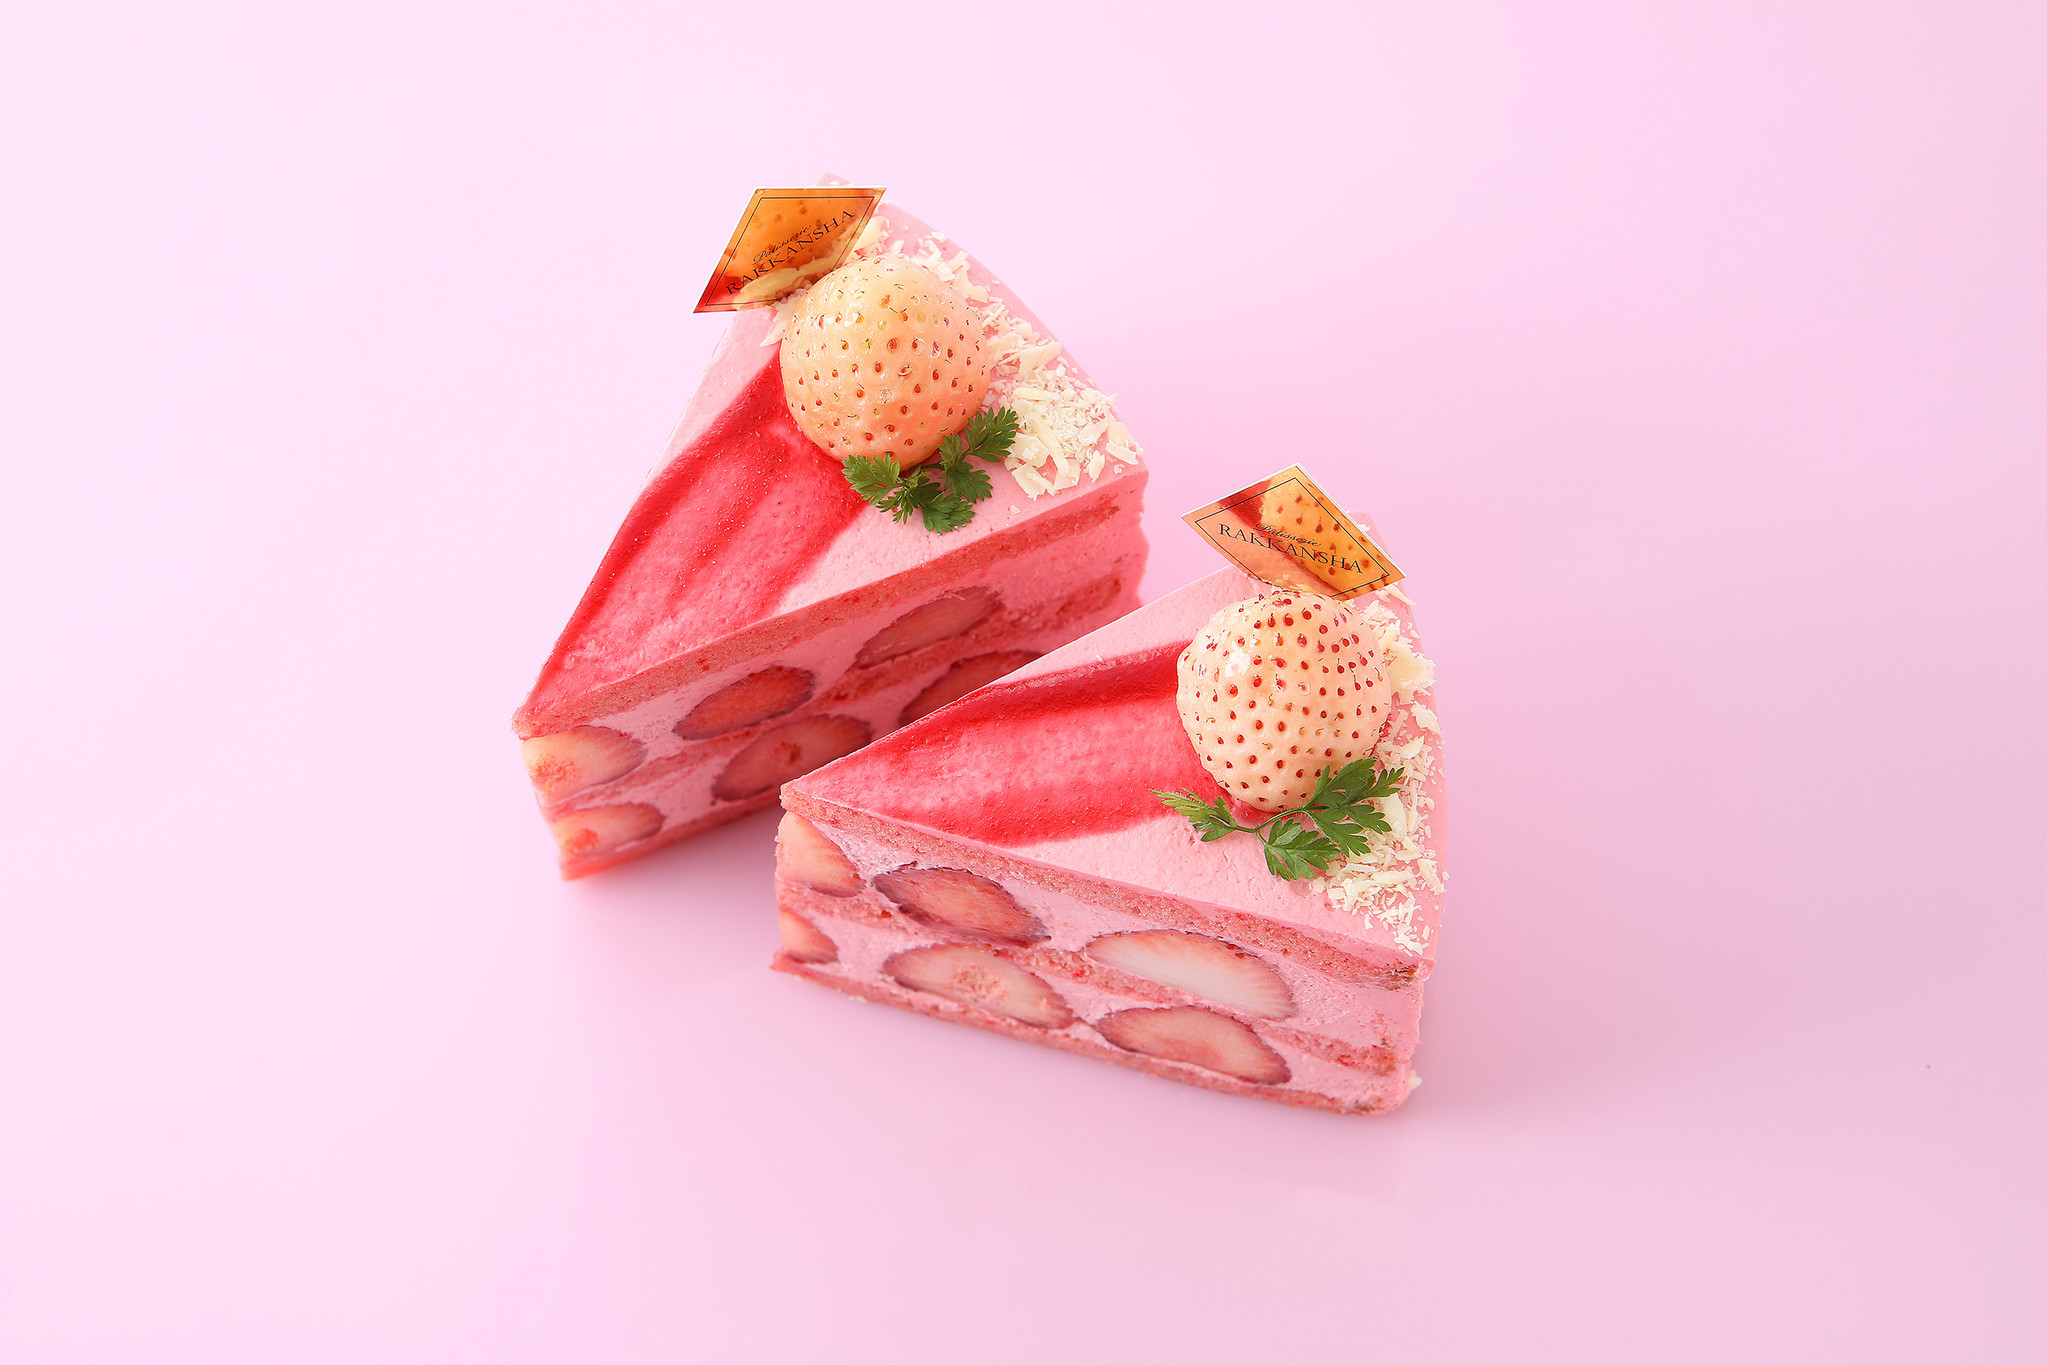 逆転の発想が冴える、「プレミアム白苺」ショートケーキが新発売 